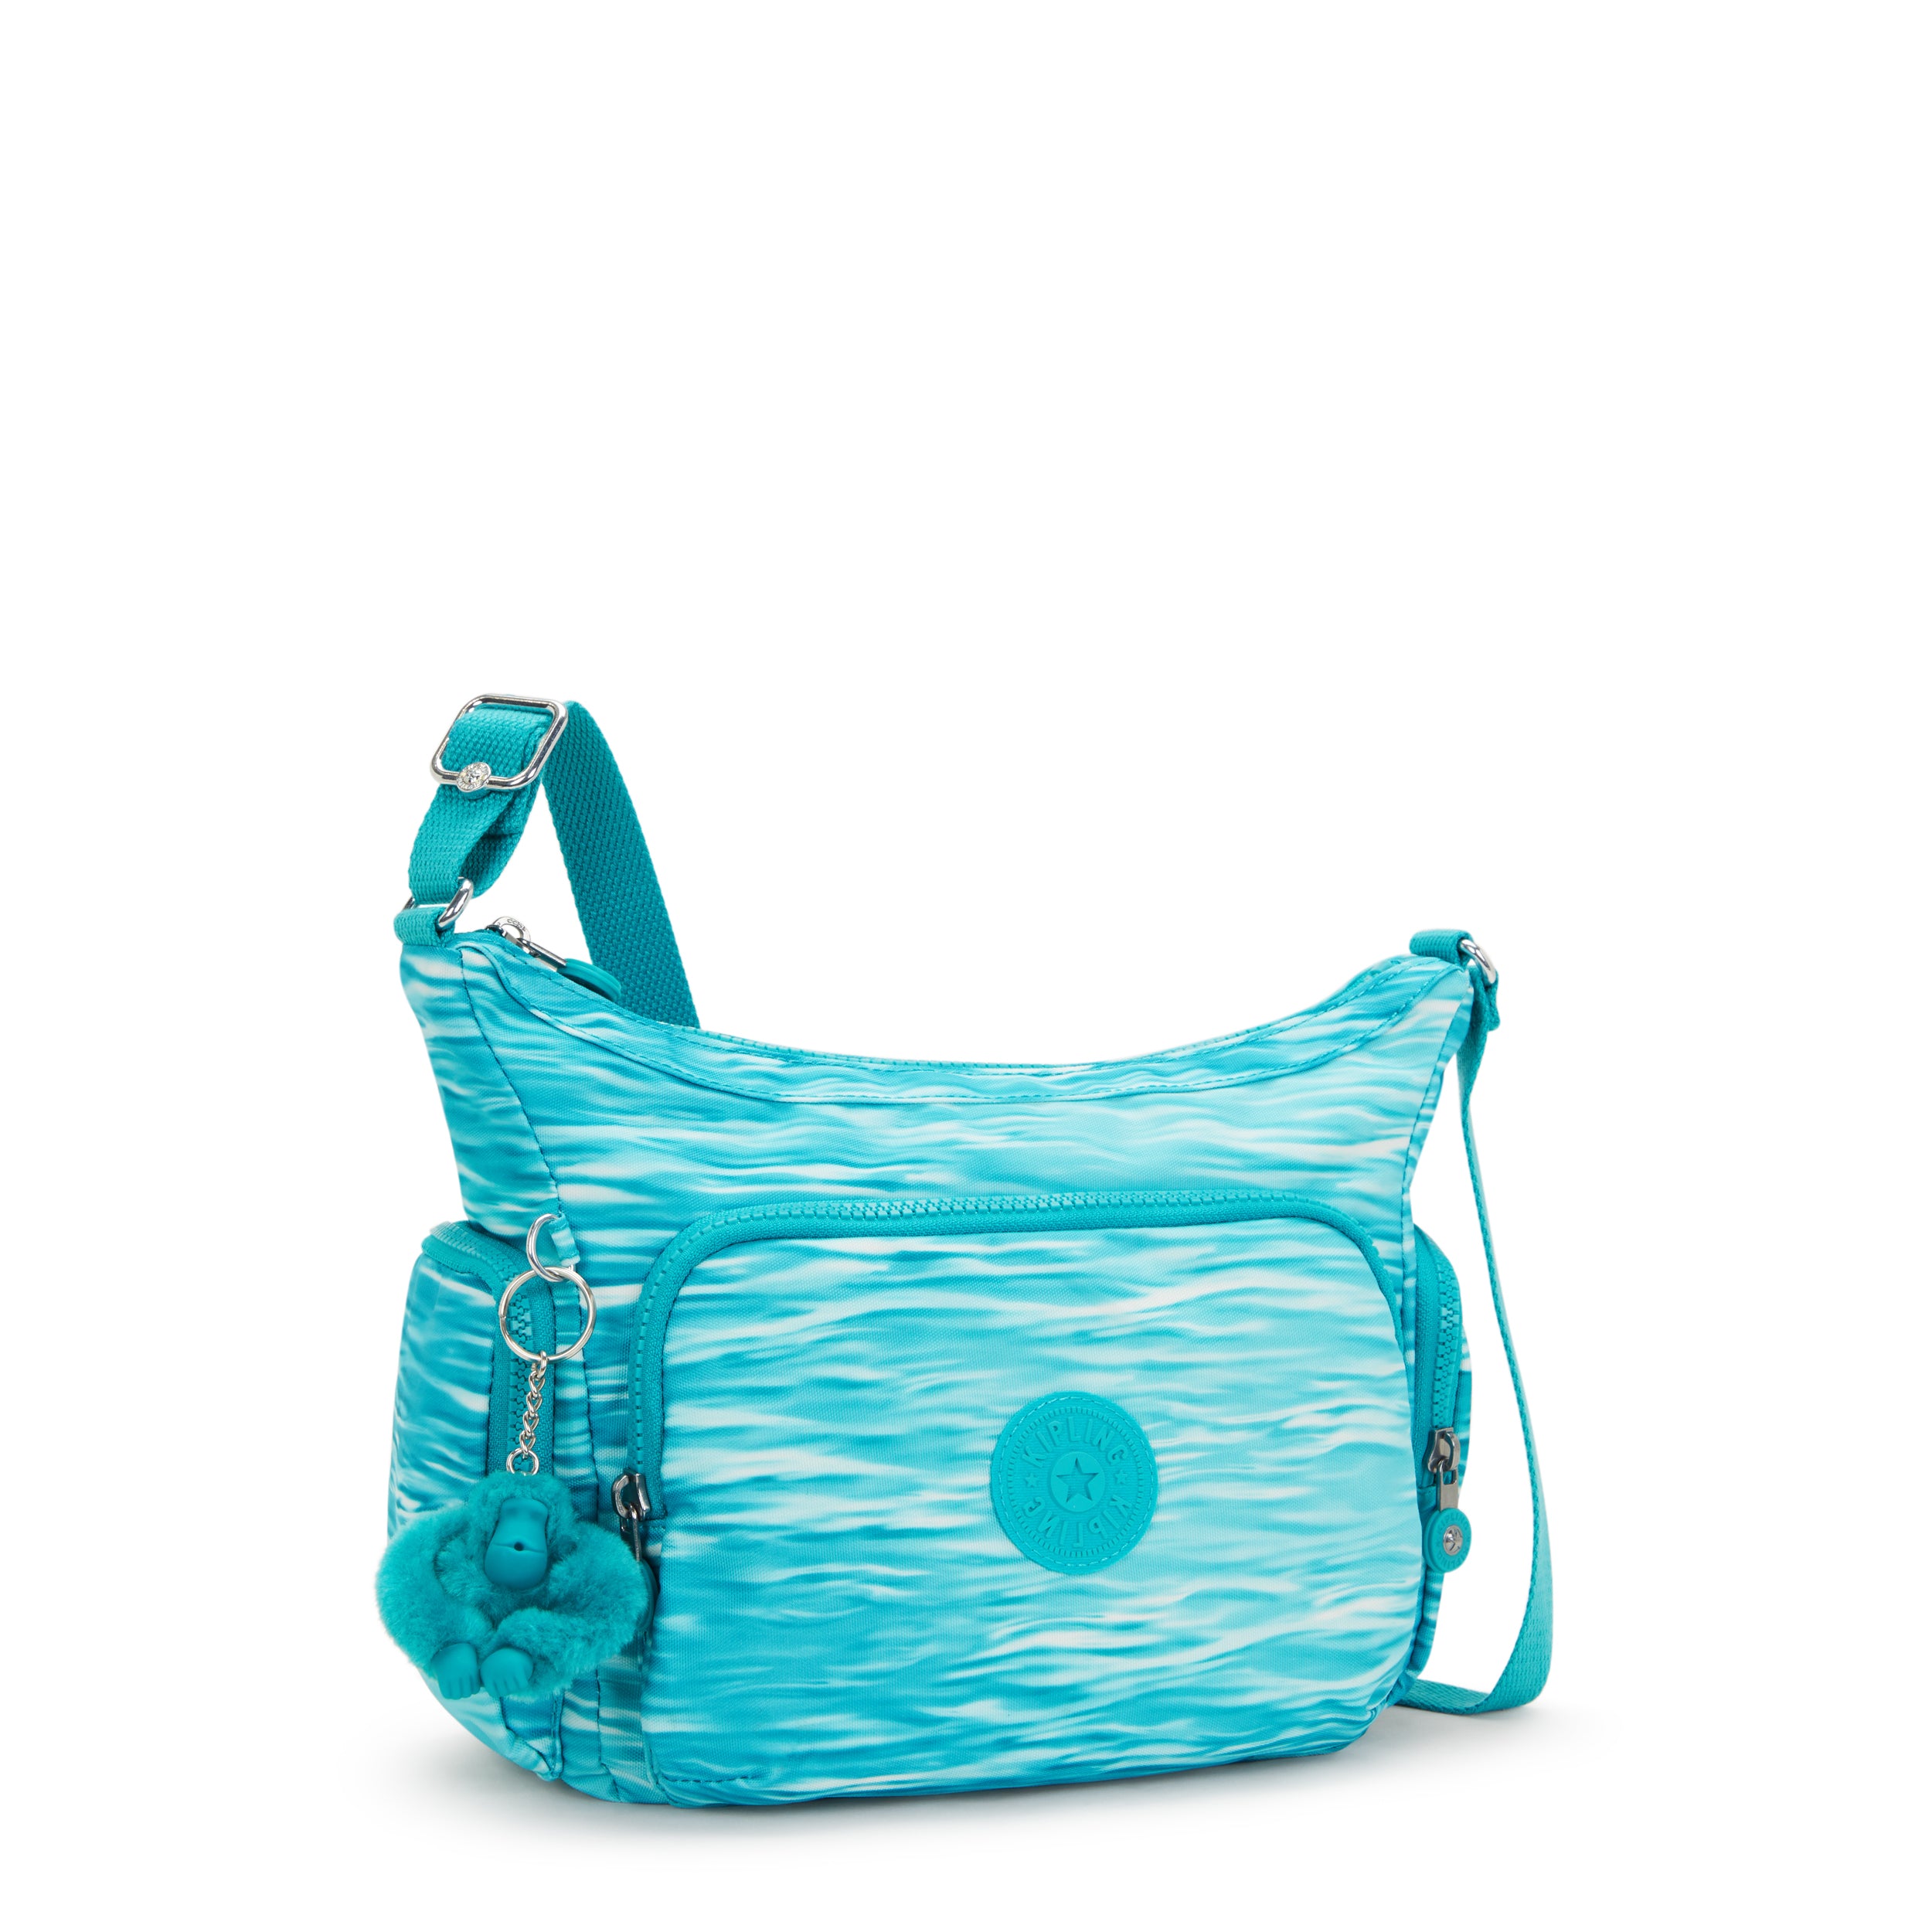 Kipling-Gabb S-Medium Crossbody Bag With Adjustable Straps-Aqua Pool-I6607-5Mf